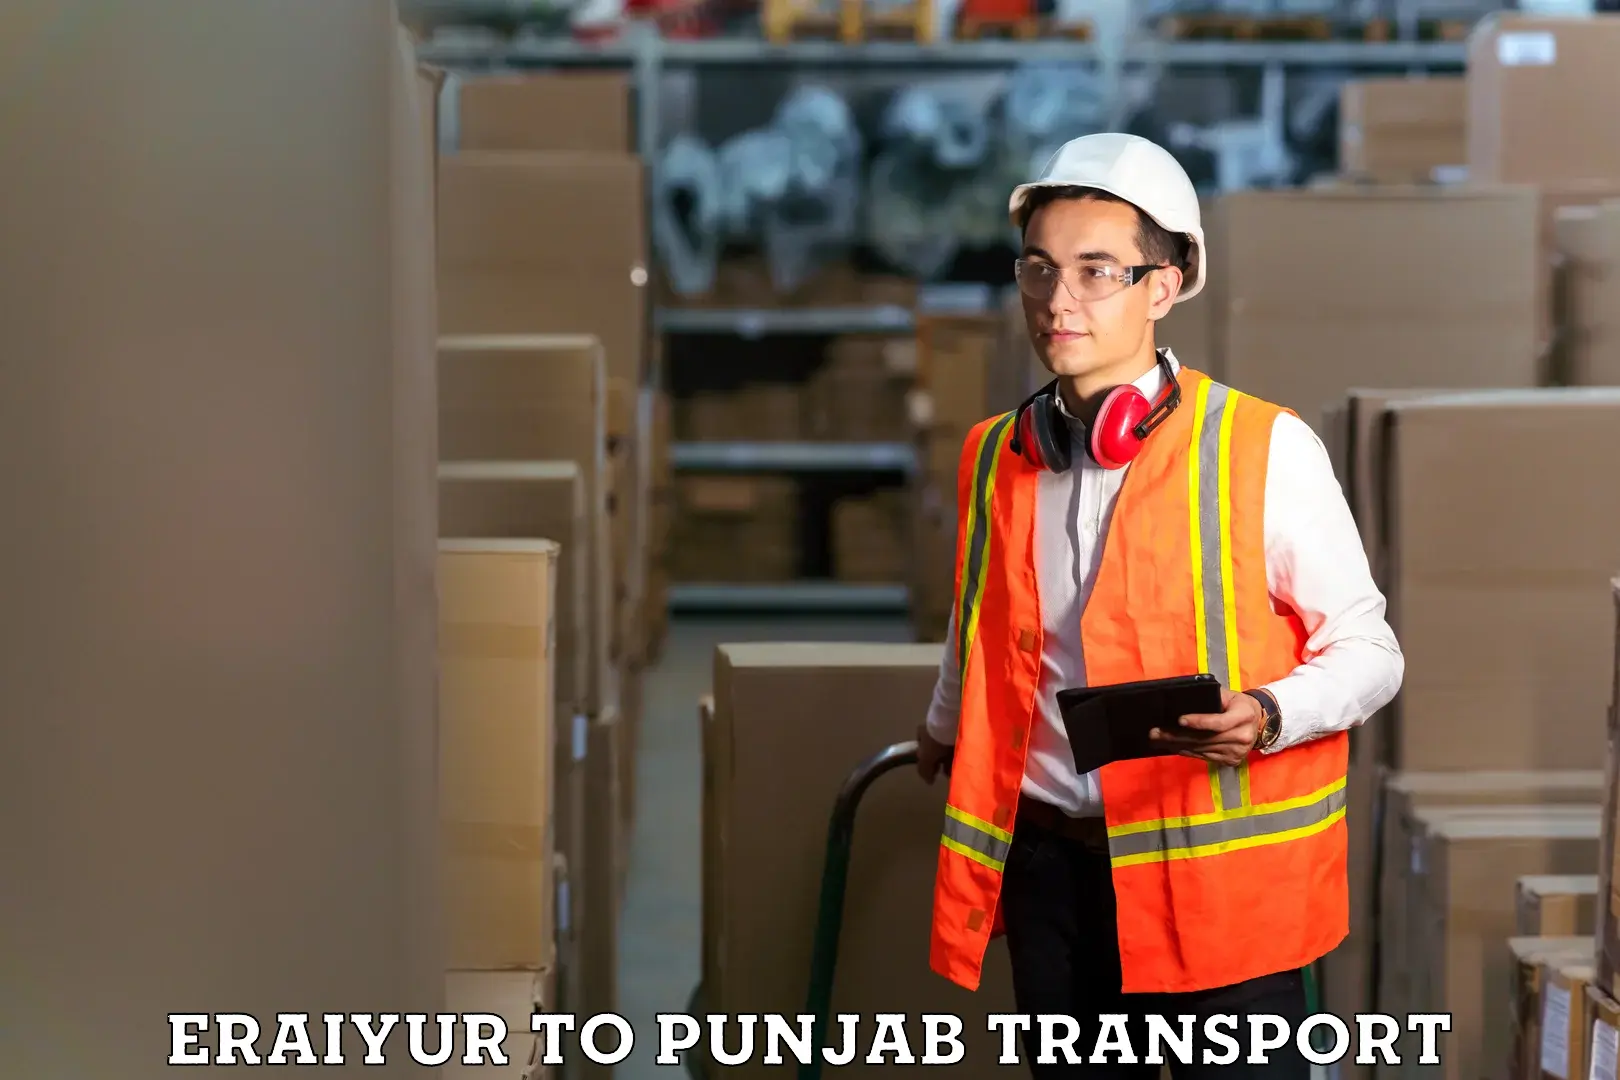 Bike transport service Eraiyur to Punjab